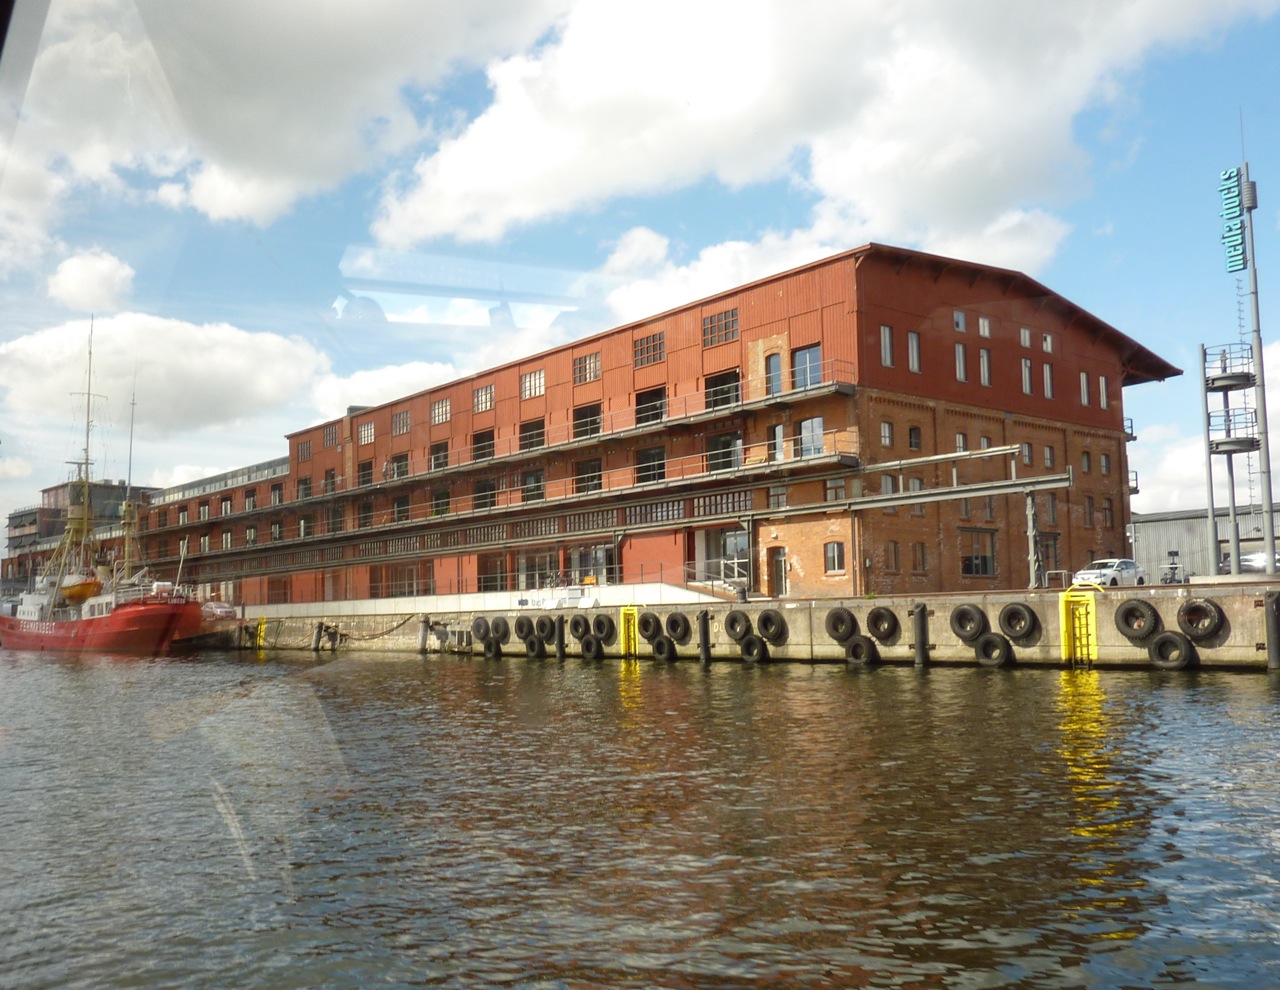 Media Docks in Lübeck